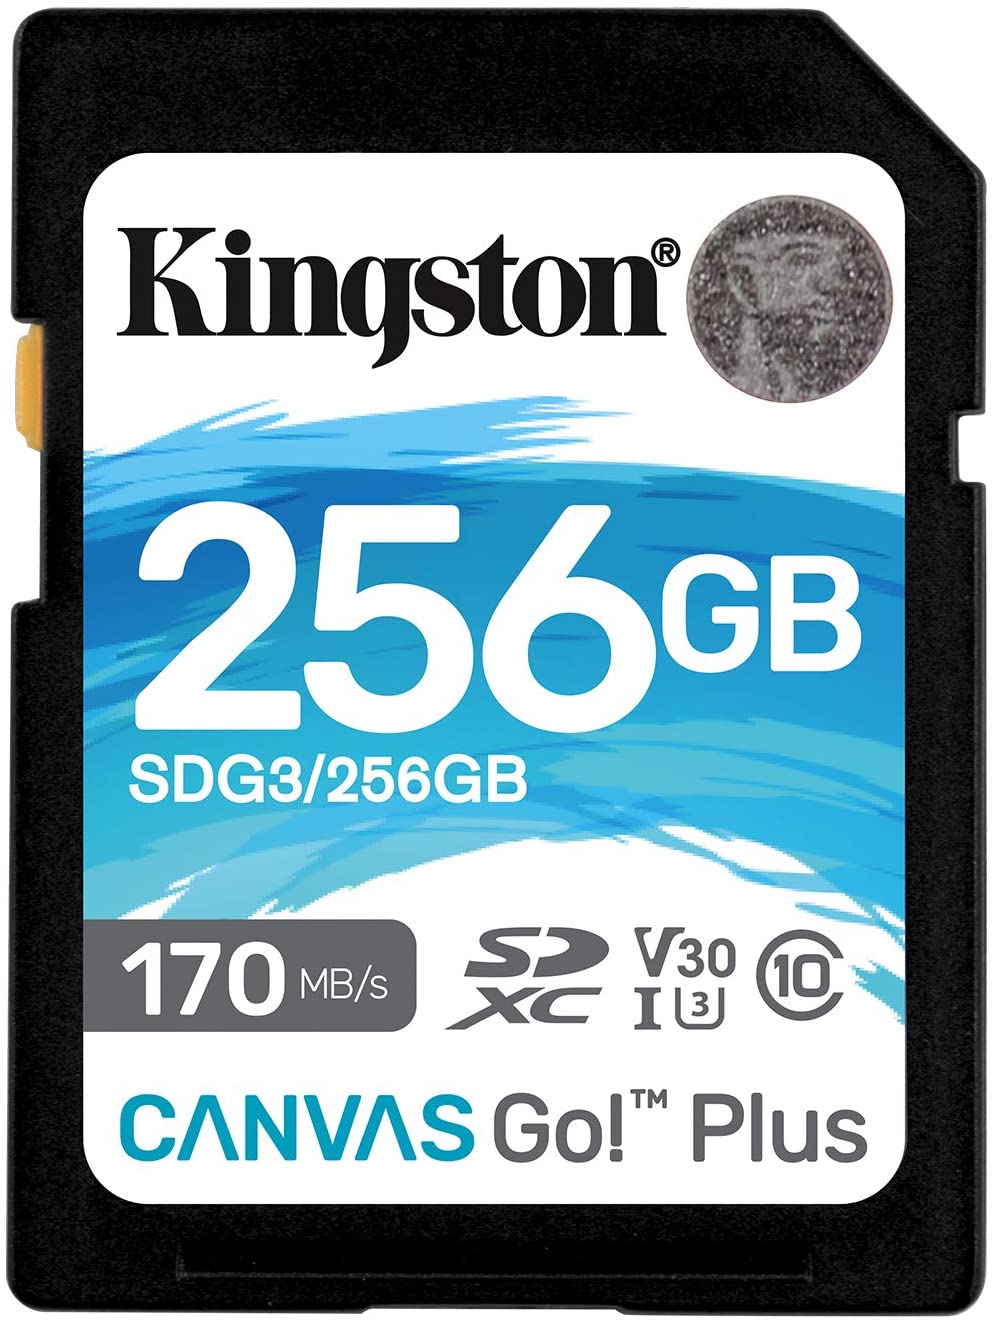 Kingston Tarjeta SDXC 256GB UHS-I U3 V30 Clase 10 170MB/s